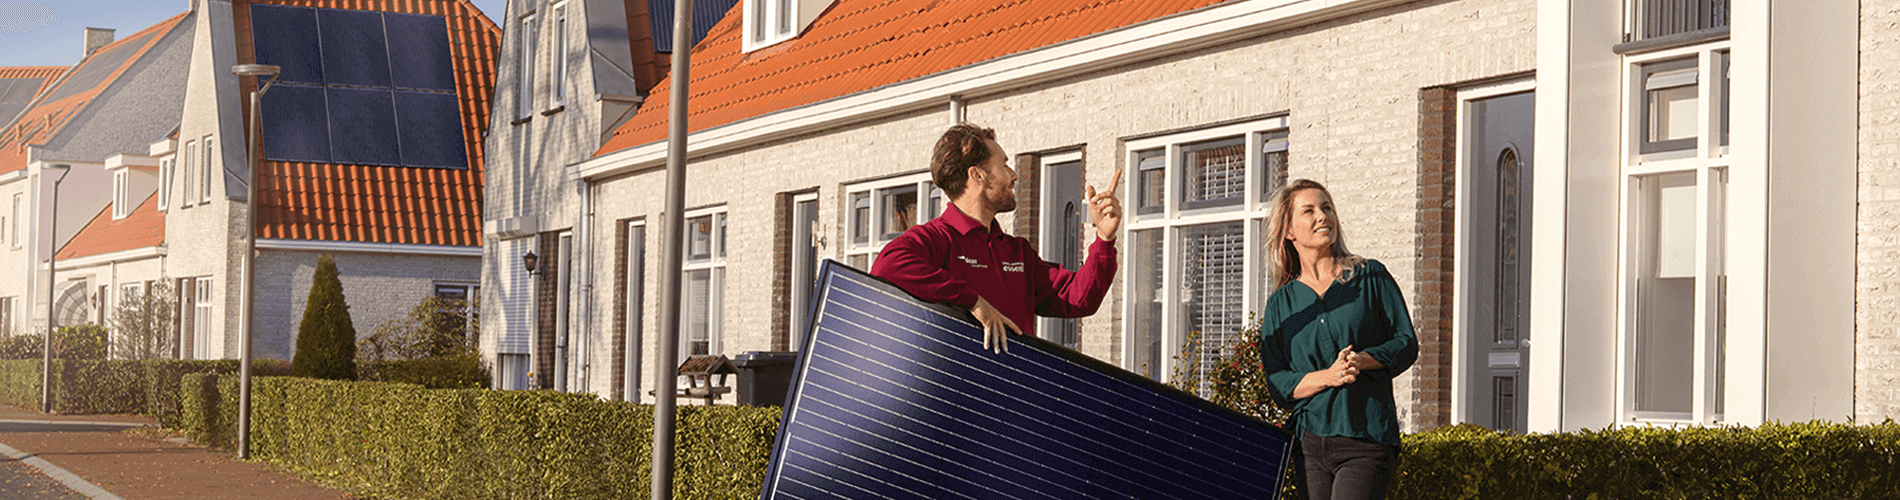 Waar op letten bij het kopen van zonnepanelen?